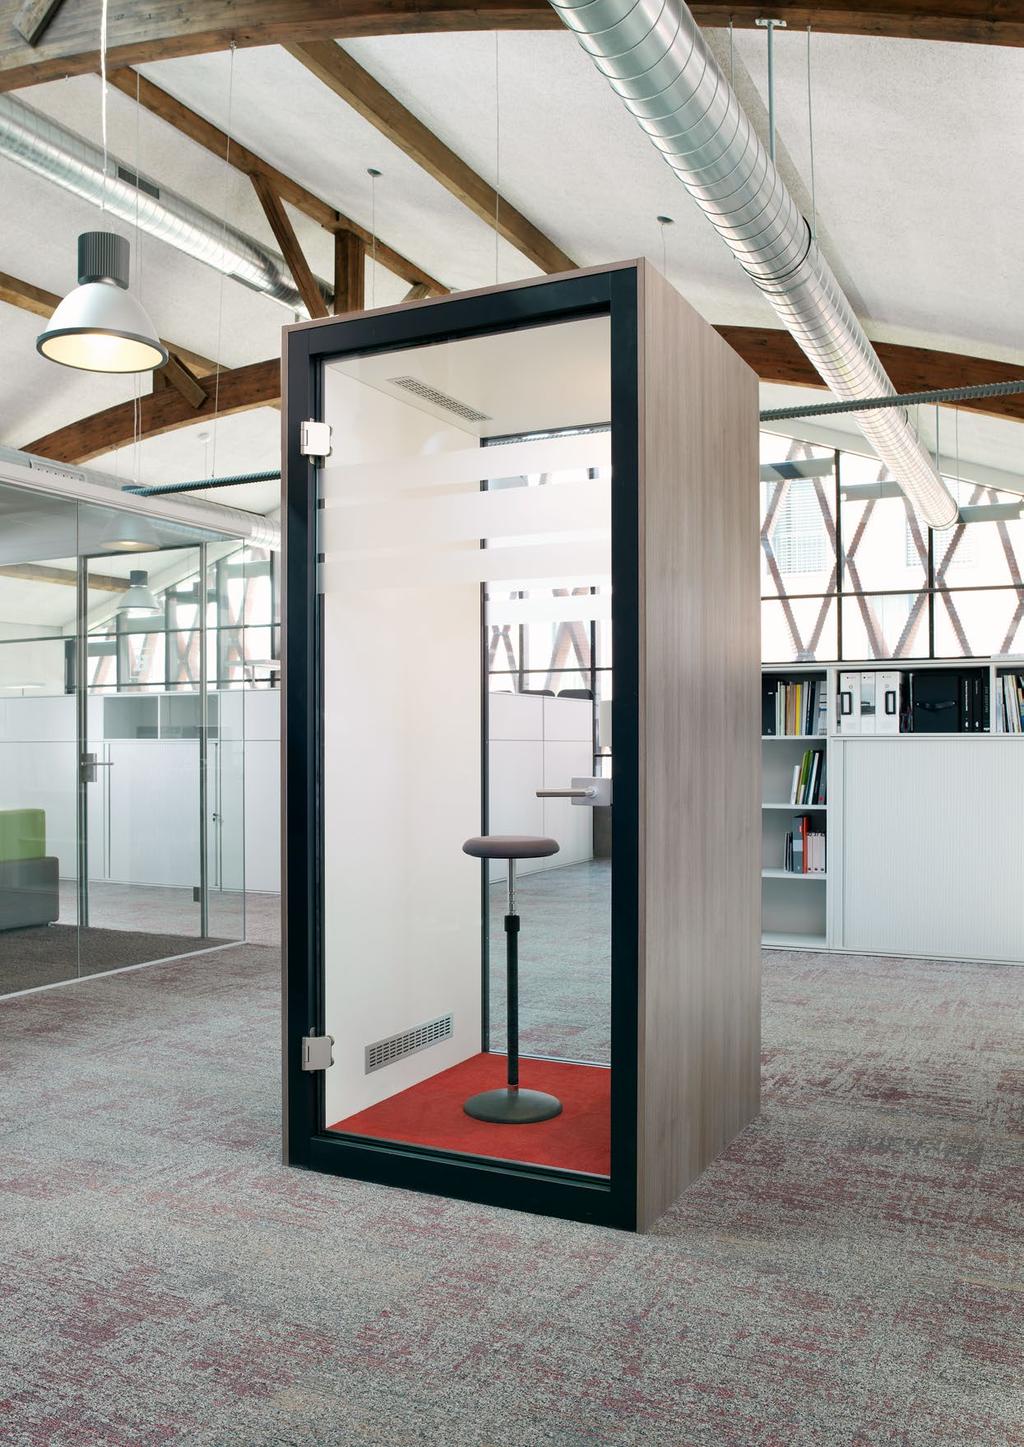 Kelmö Box Komfortabler Rückzugsort Das Raum-in-Raum-System bietet im Grossraumbüro den idealen Rückzugsort für ungestörtes Telefonieren oder Gespräche im kleinen Rahmen.